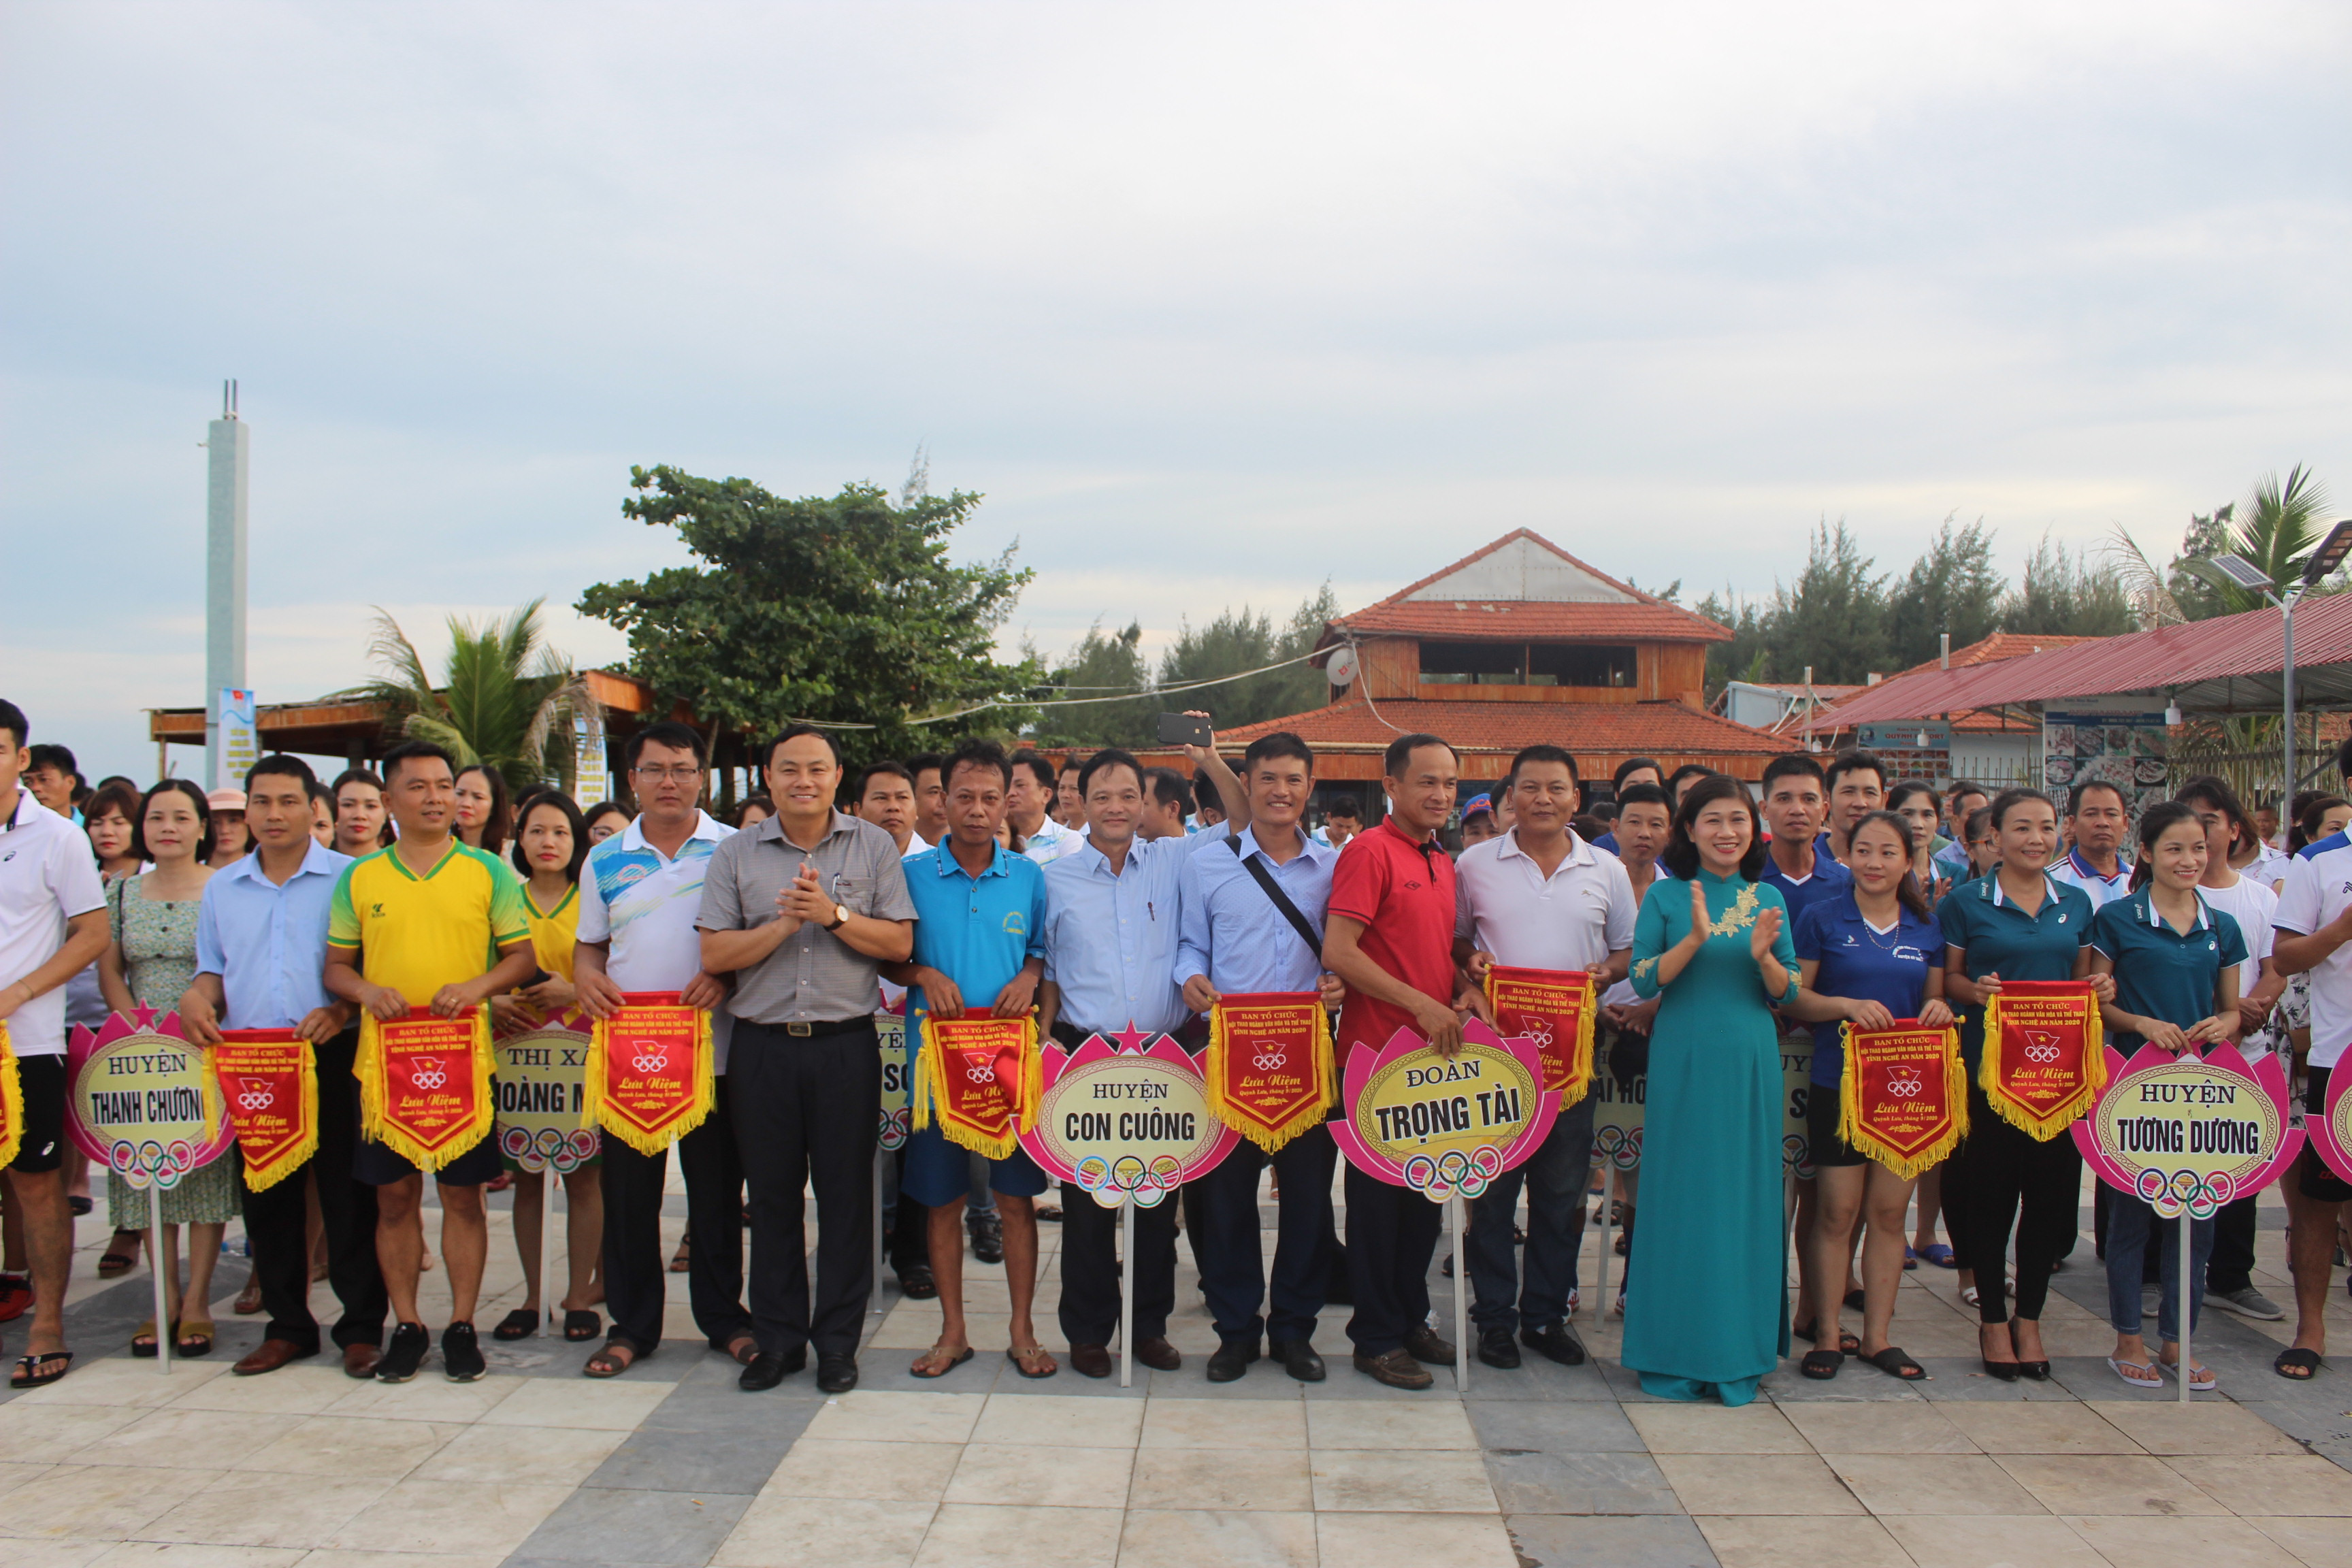 Lãnh đạo Sở và huyện Quỳnh Lưu trao cờ lưu niệm cho các đoàn tham dự giải.